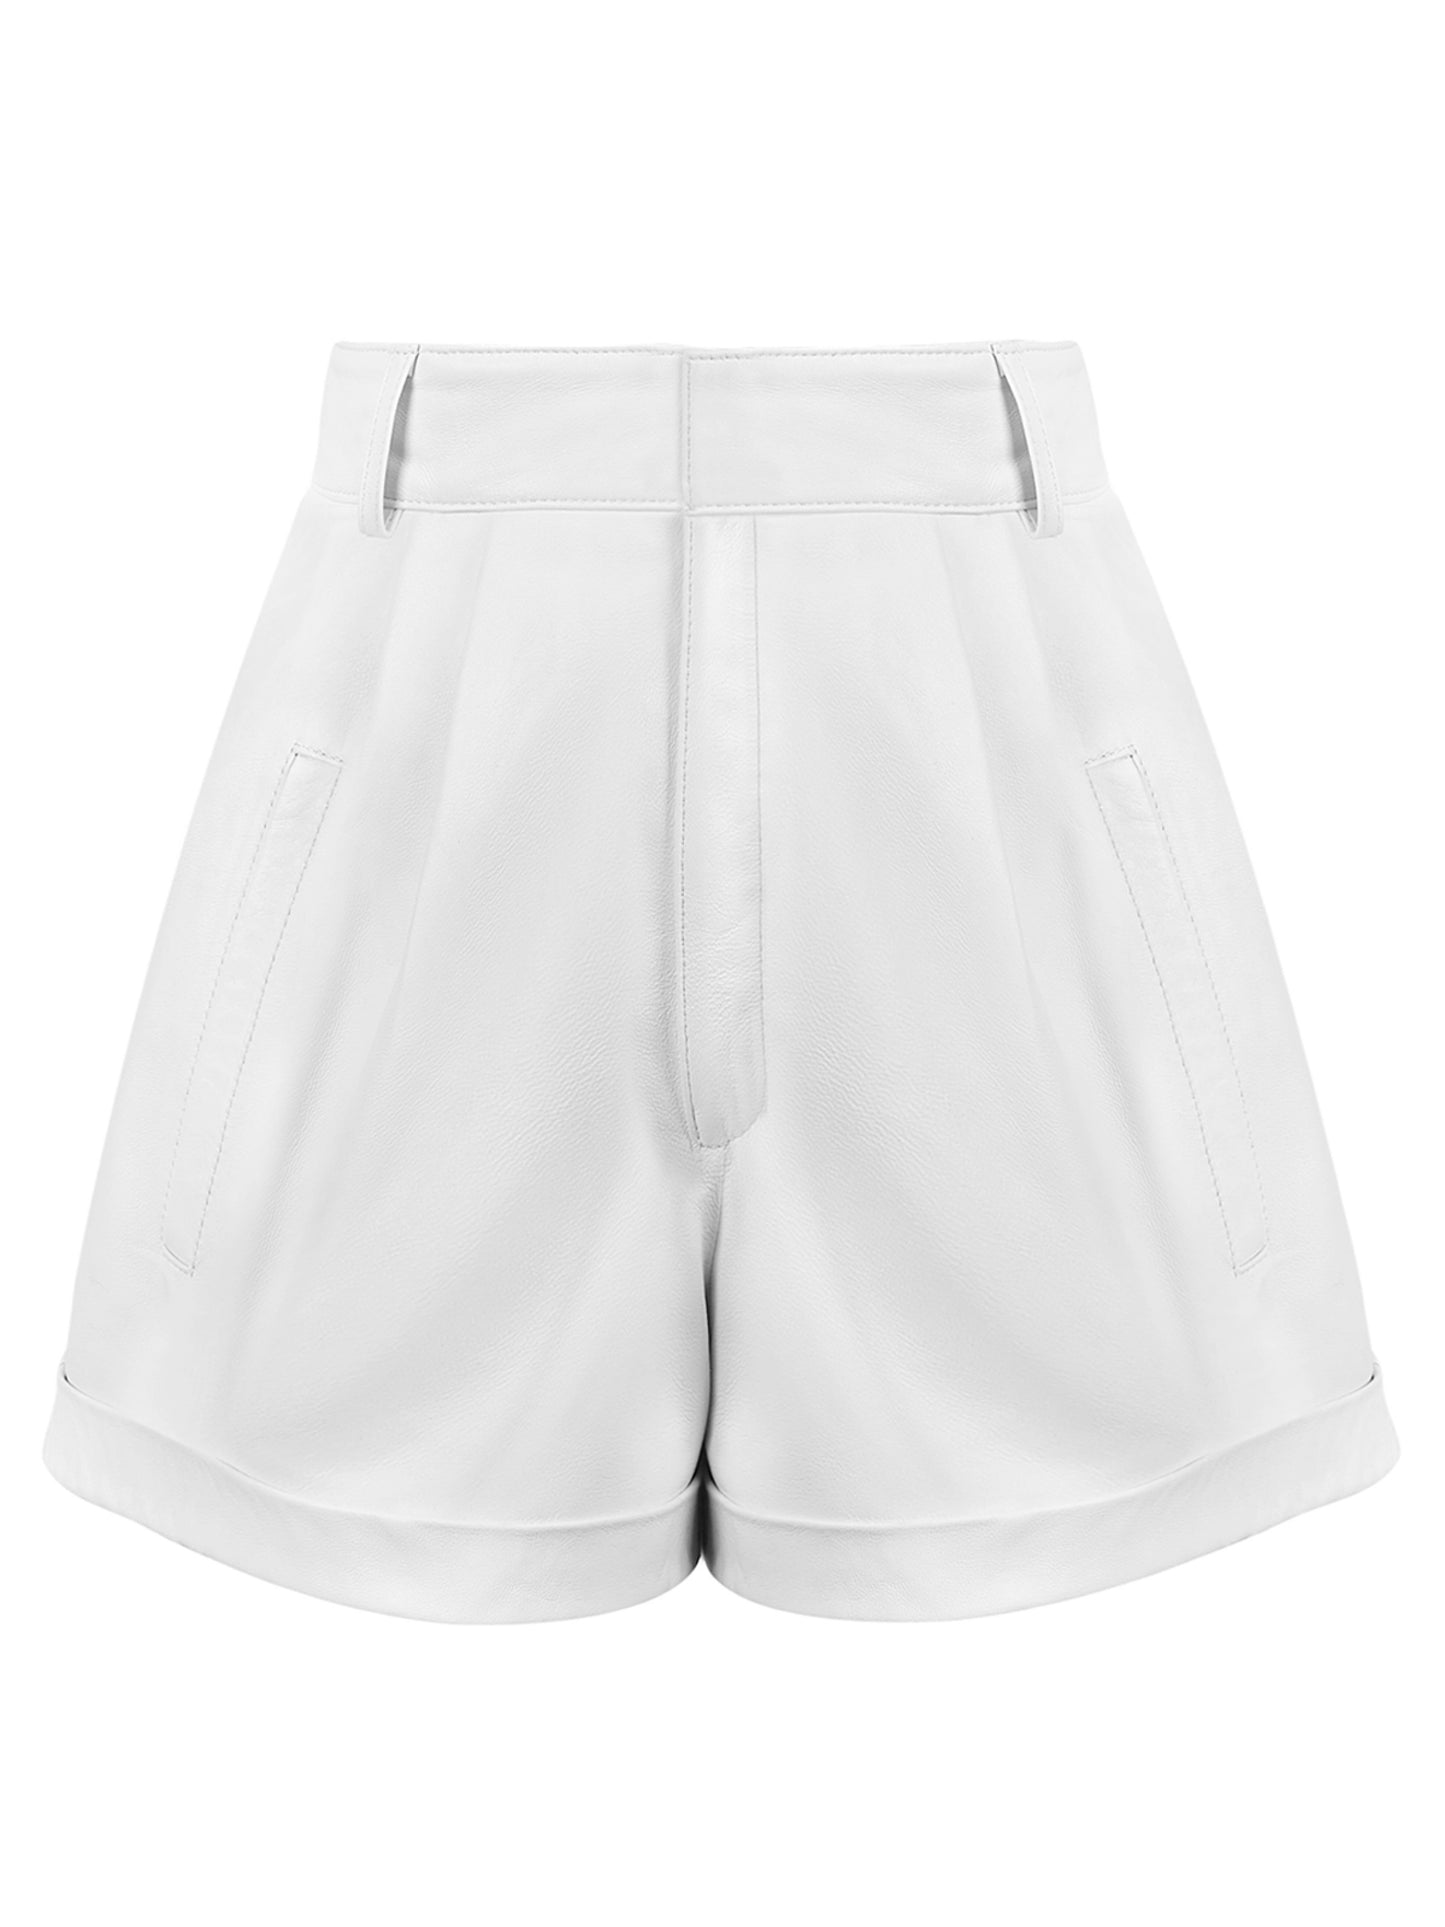 Manokhi Jett Shorts White